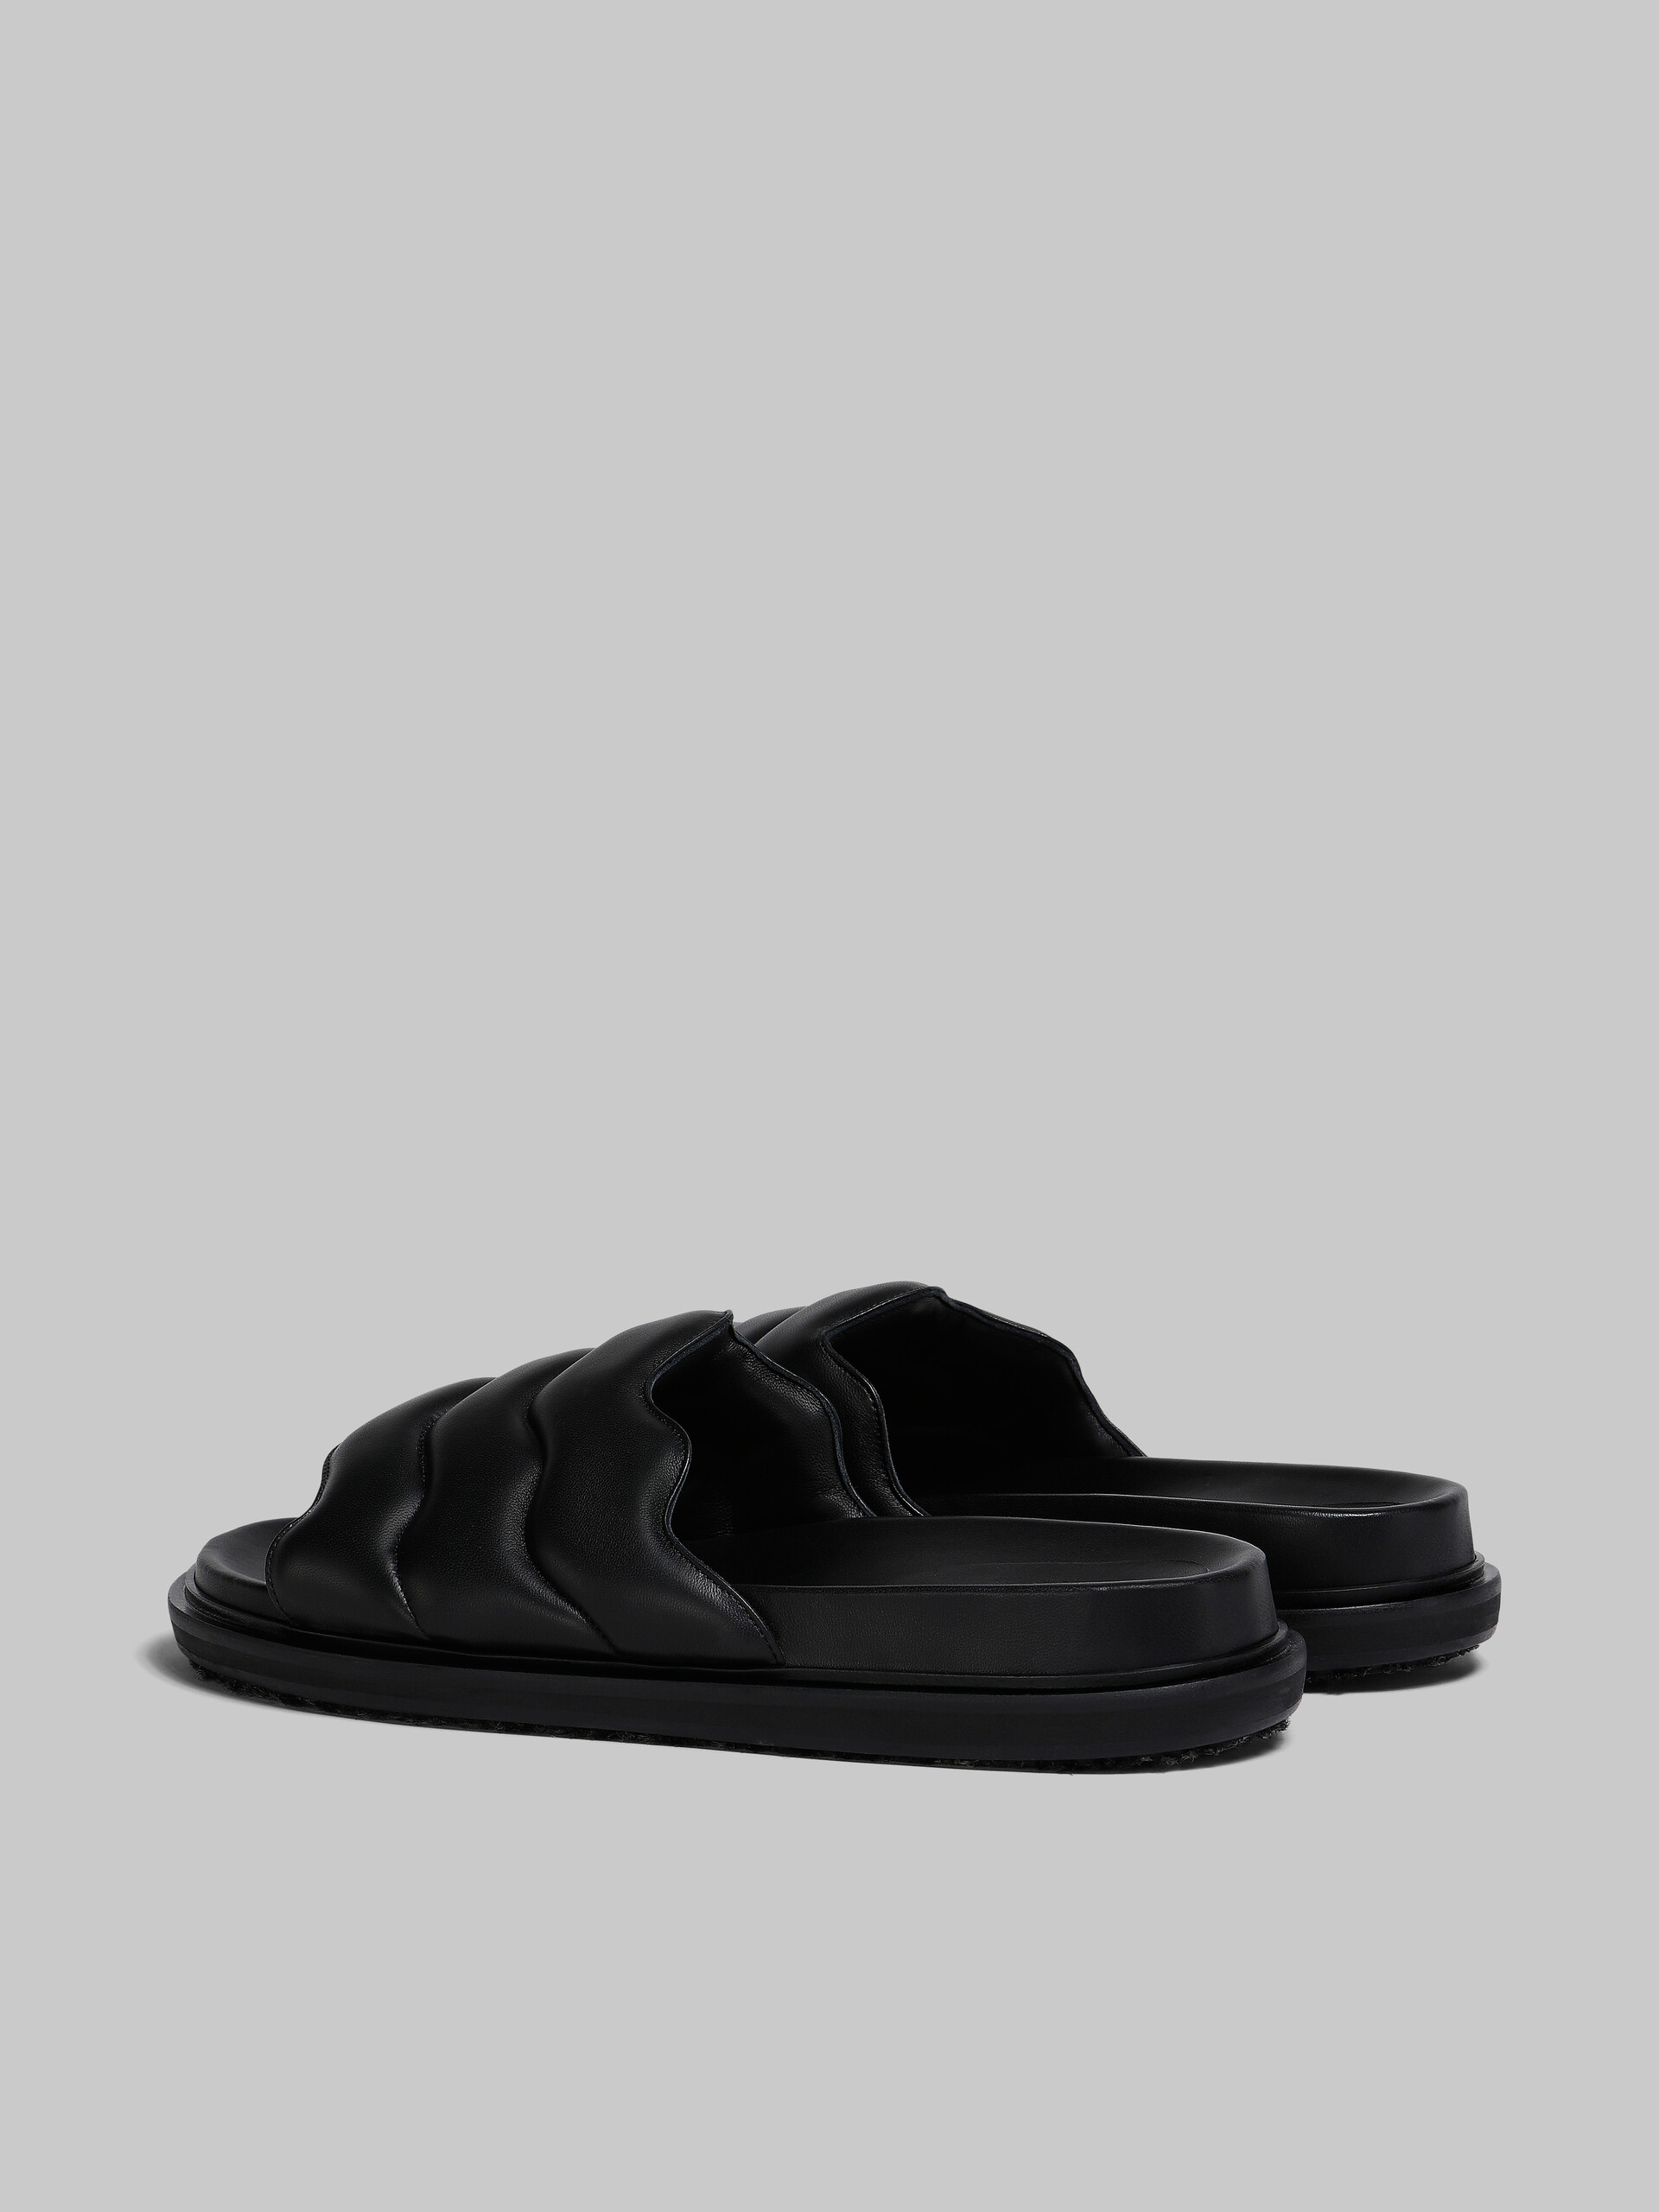 Black wavy leather slide sandal - Sandals - Image 3